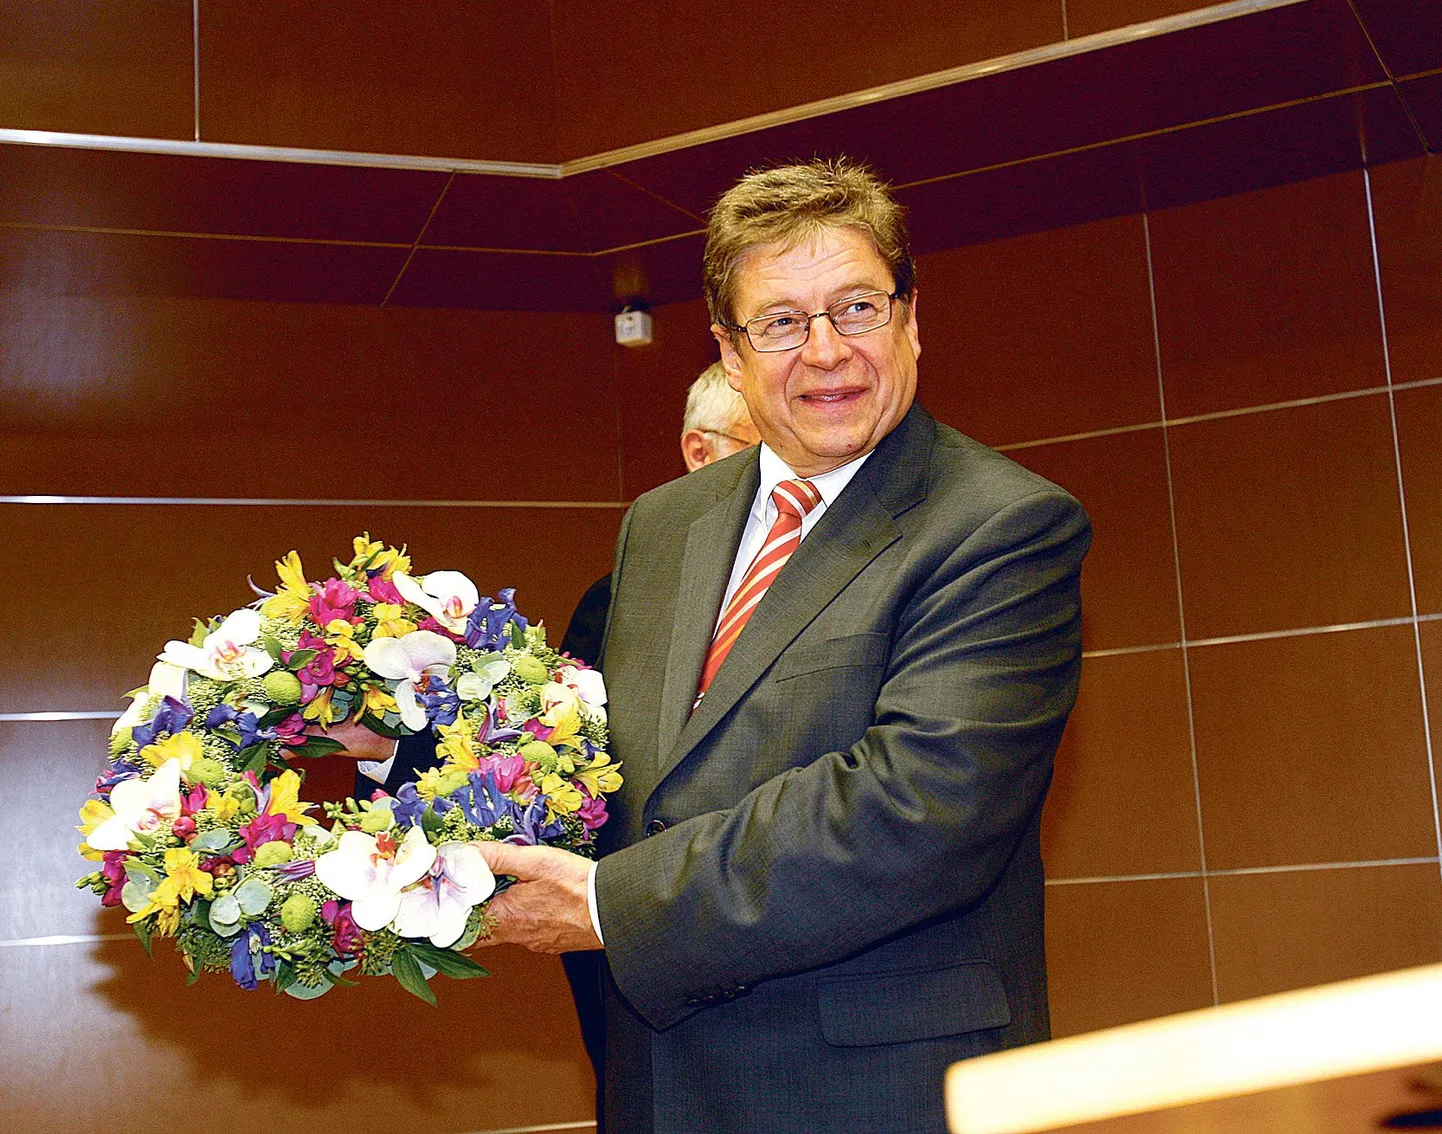 Taas maaülikooli rektoriks valitud Mait Klaassen sai lillekimbu asemel kauni pärja.